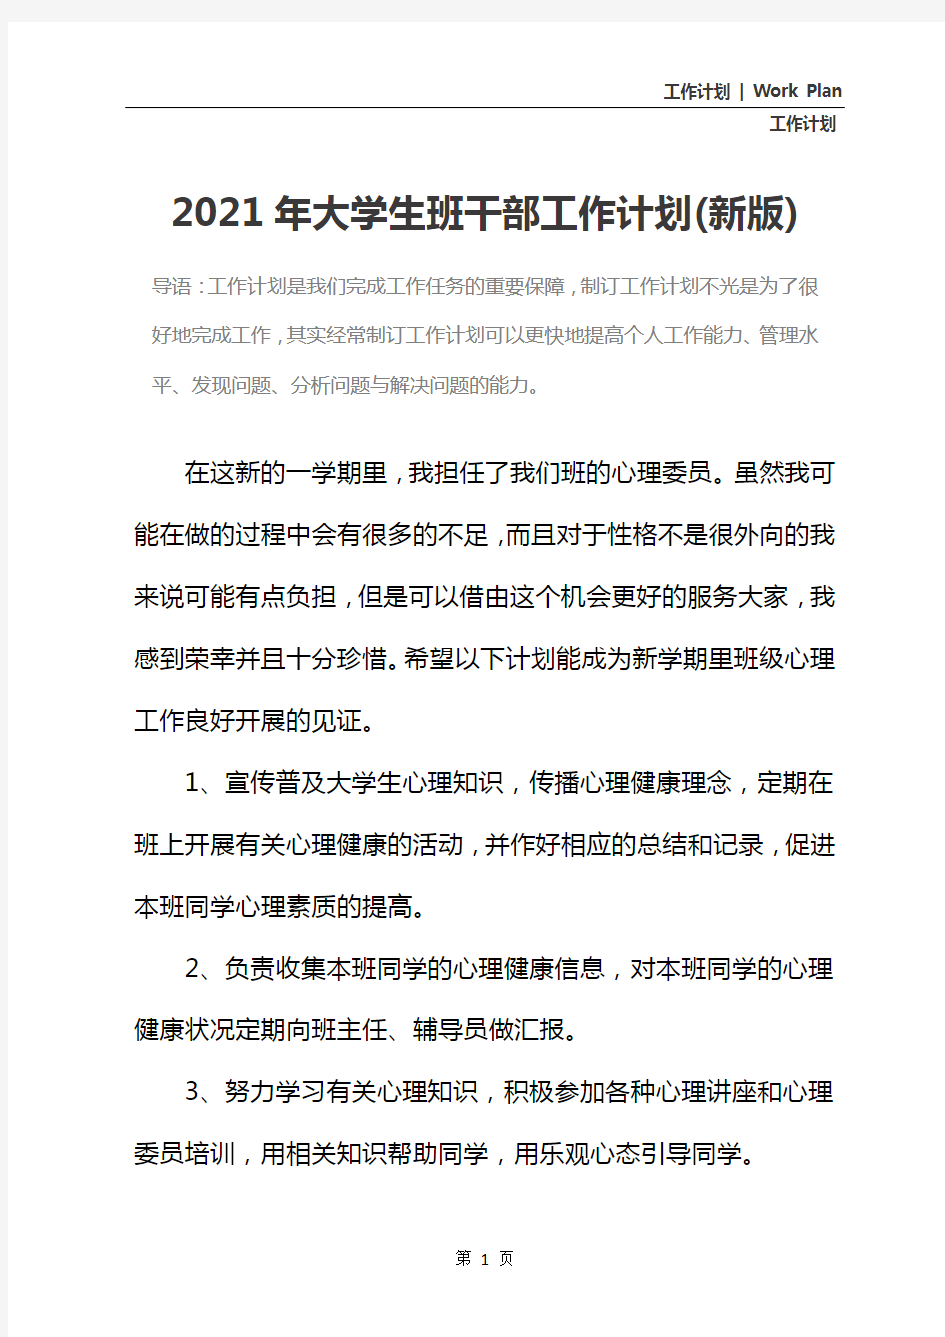 2021年大学生班干部工作计划(新版)